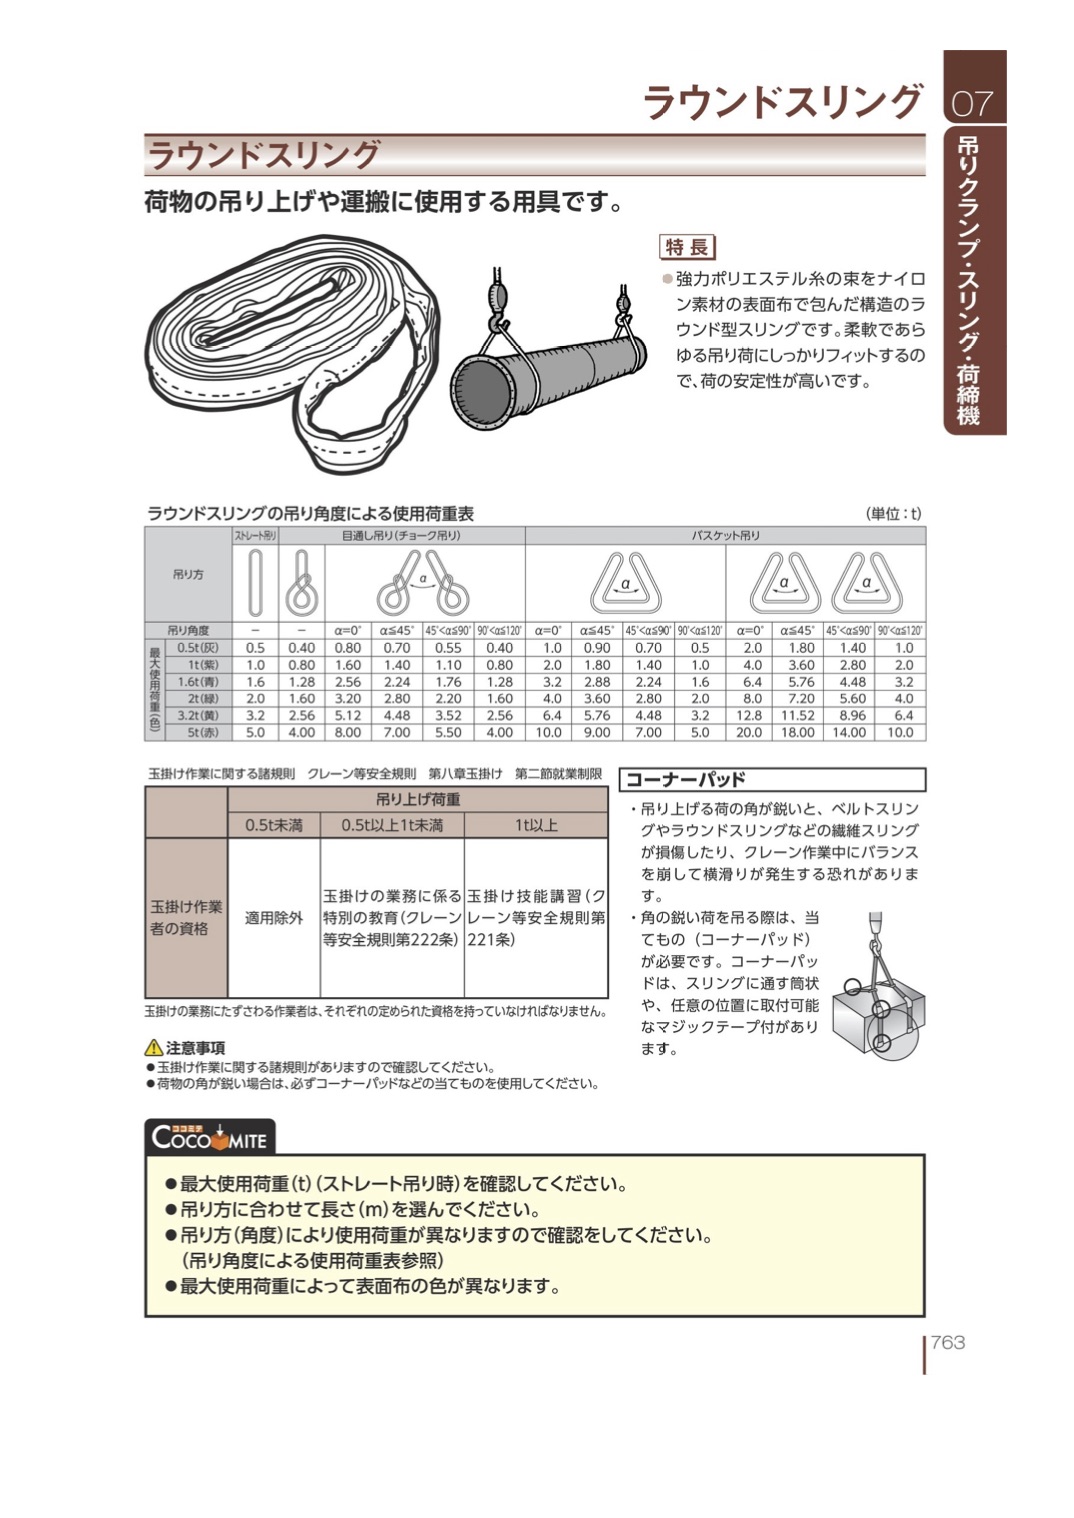 メール便不可】 ブルースリング ソフト E型 両端アイ 5.0t × 5.0M ベルトスリング made in JAPAN